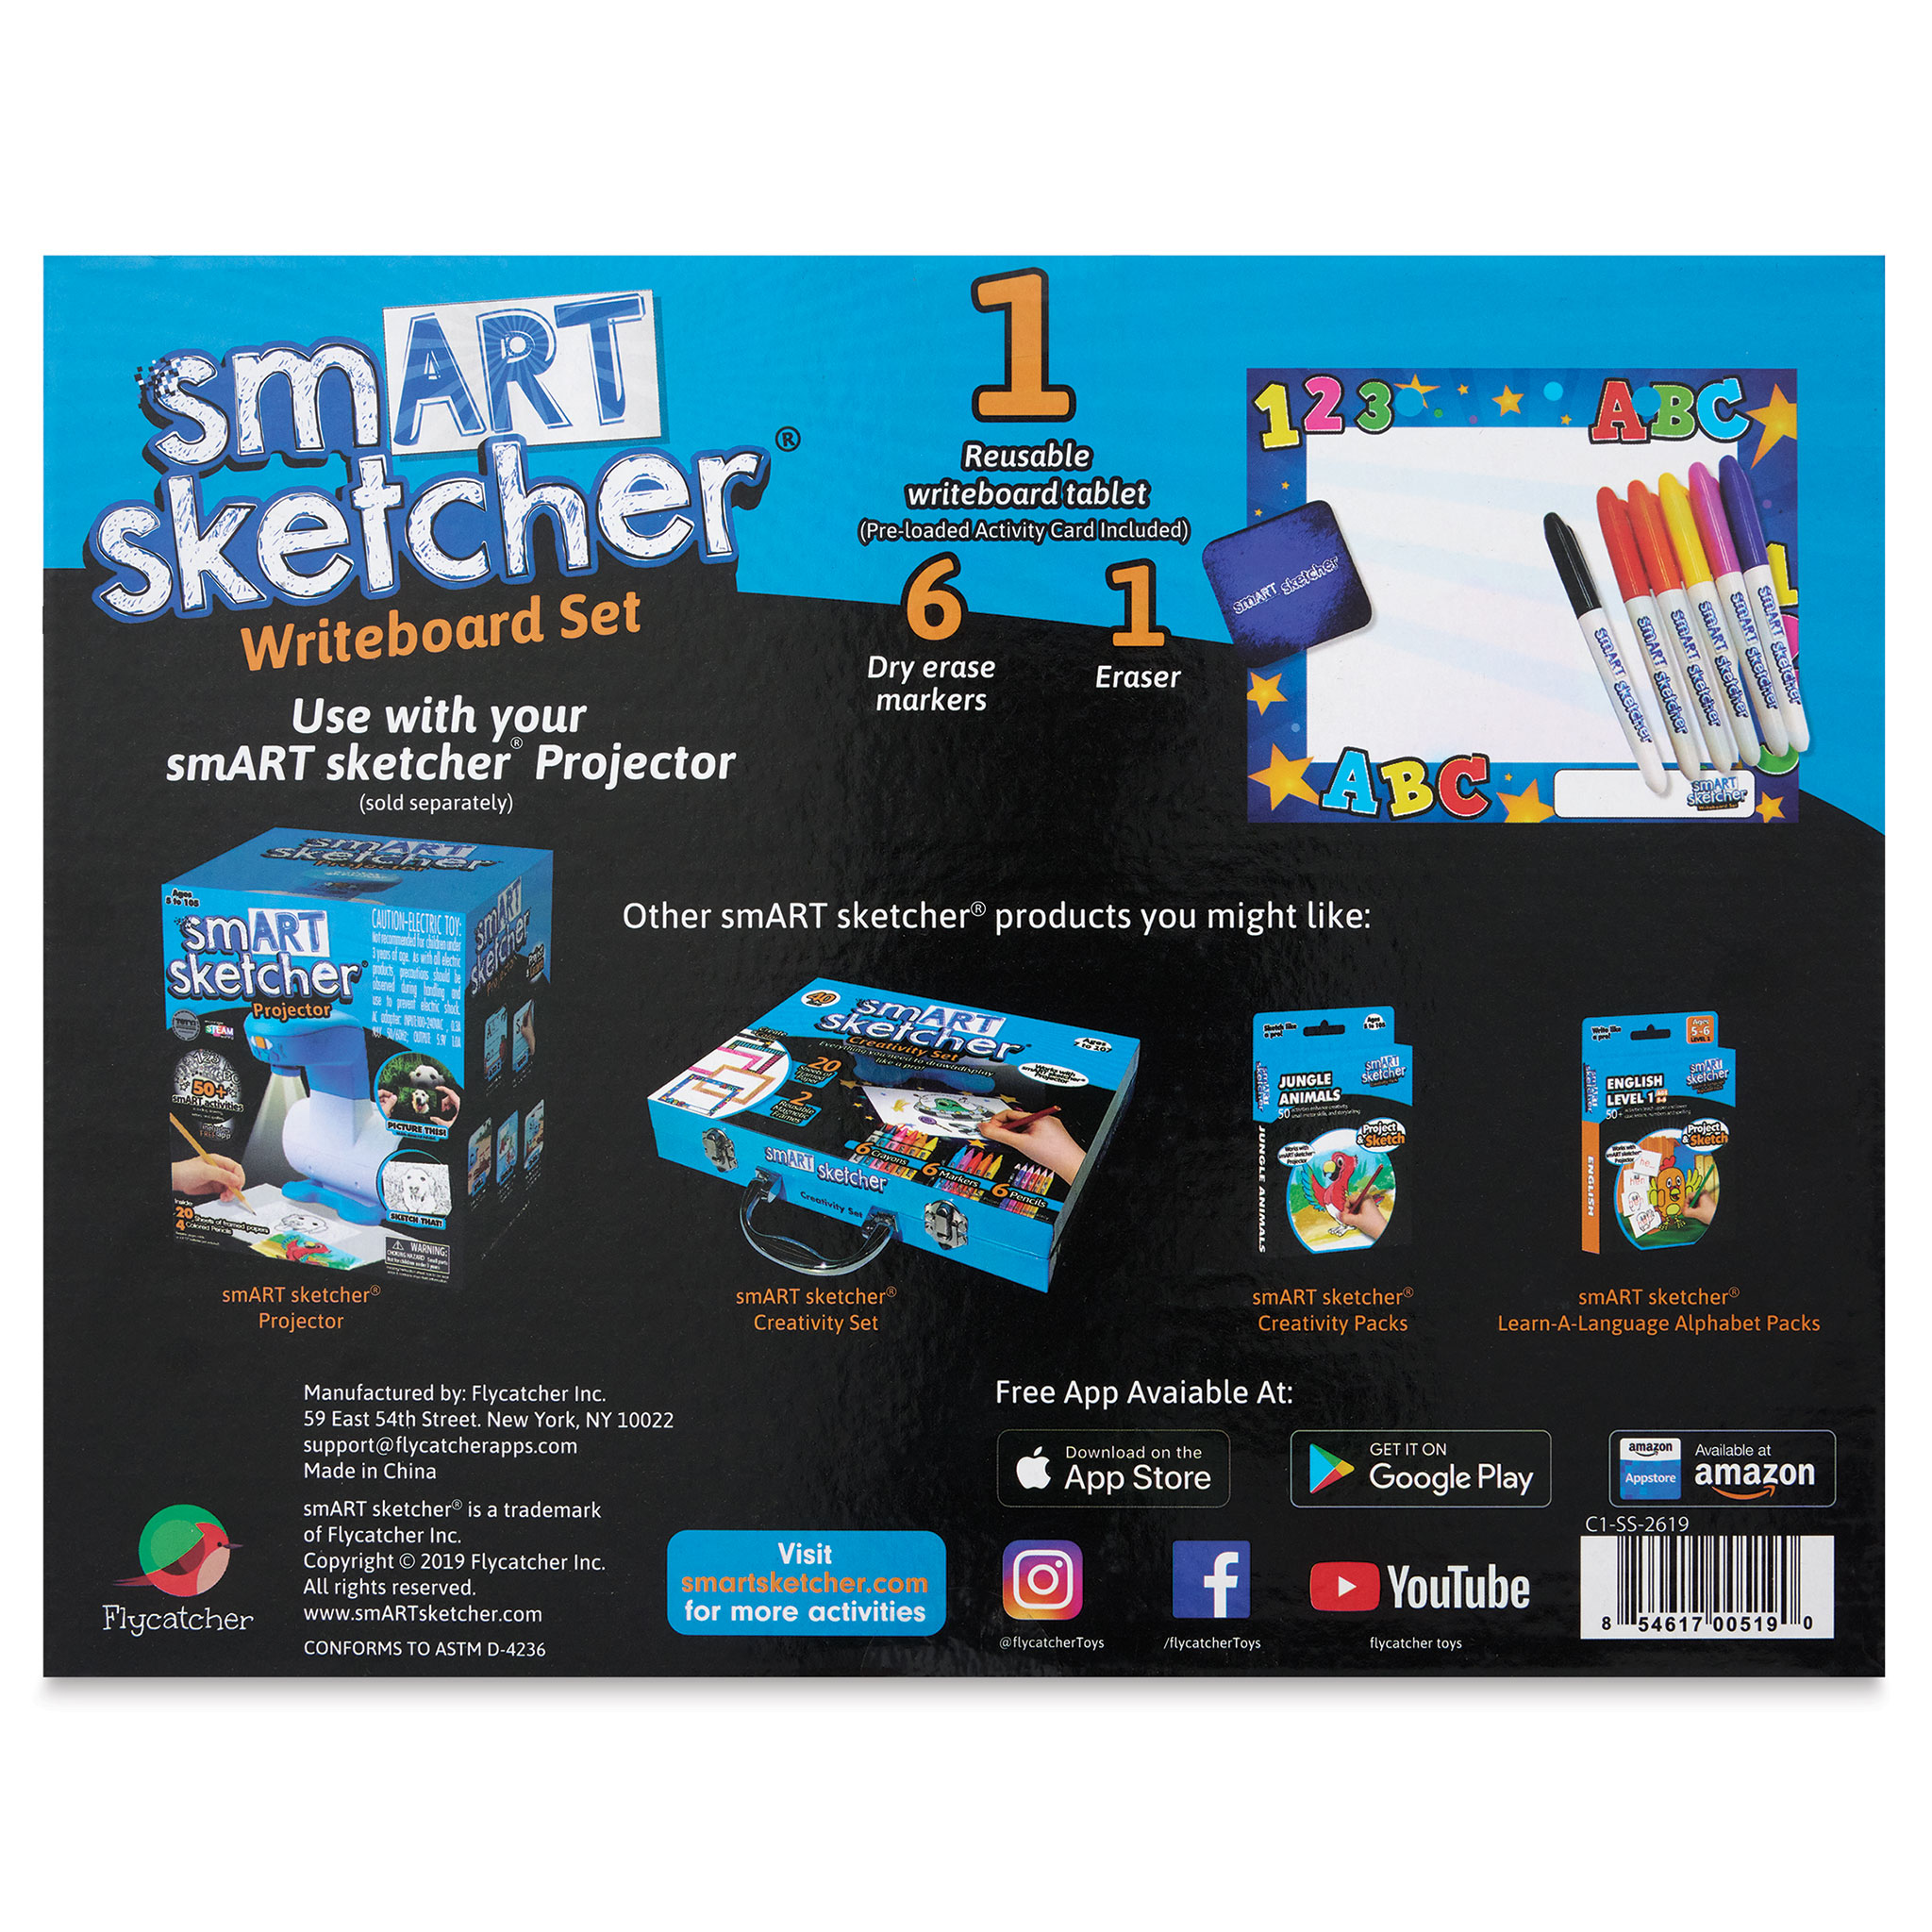 Flycatcher smART Sketcher Projector 2.0